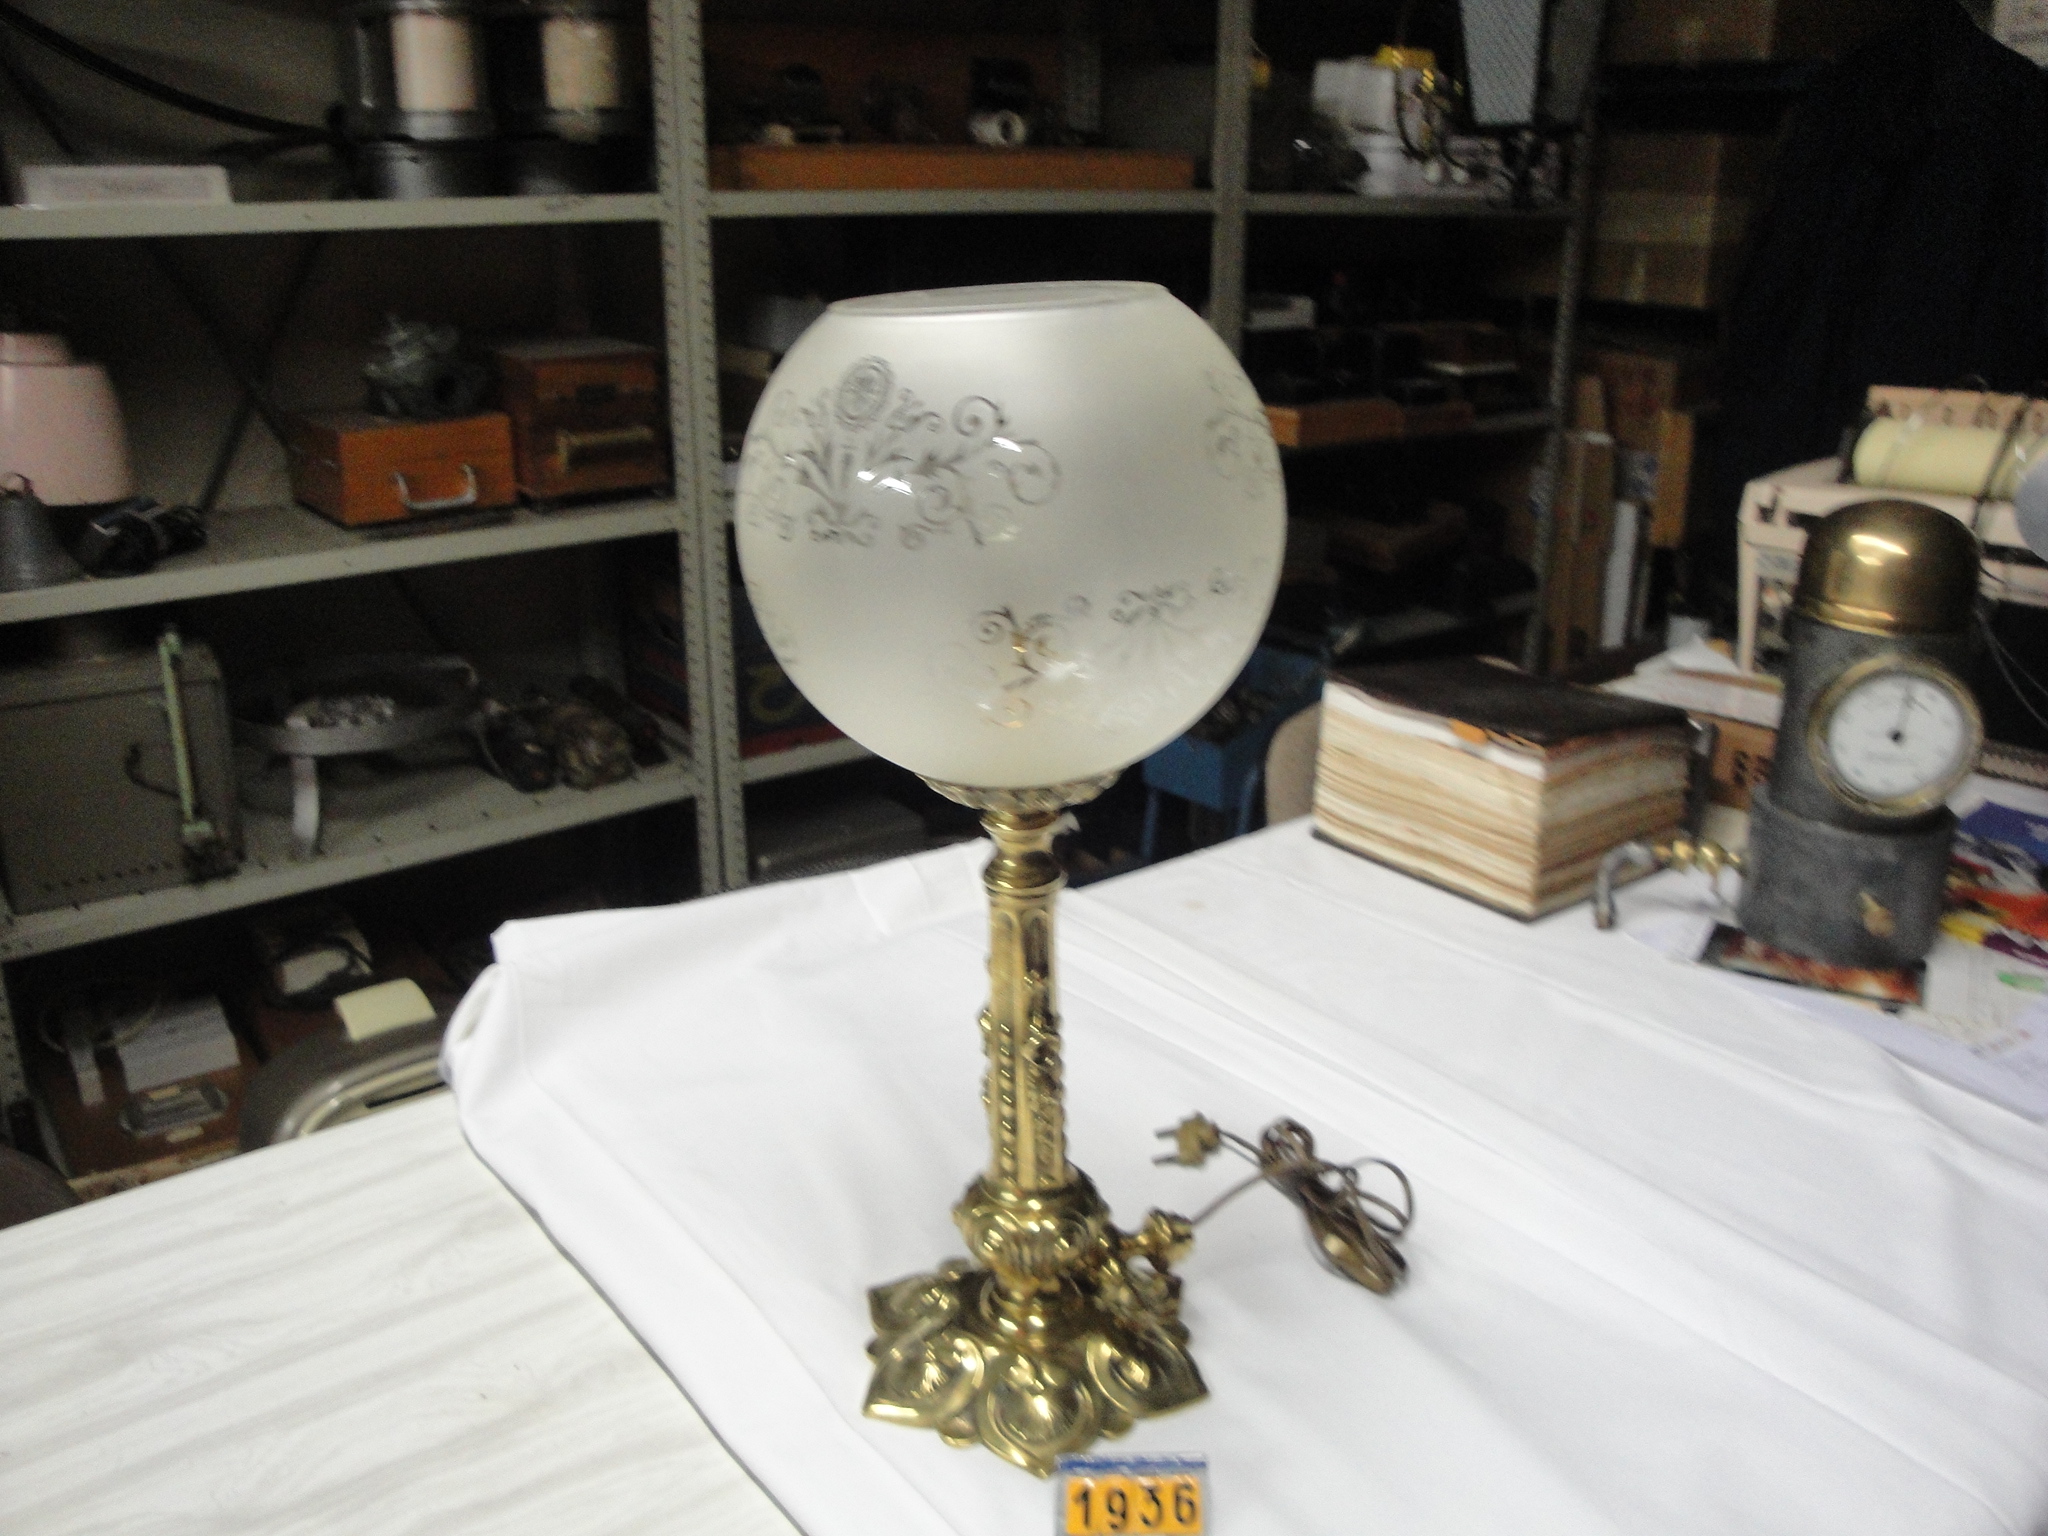  Collection ASPEG, pièce numéro 1936 : Lampe électrique